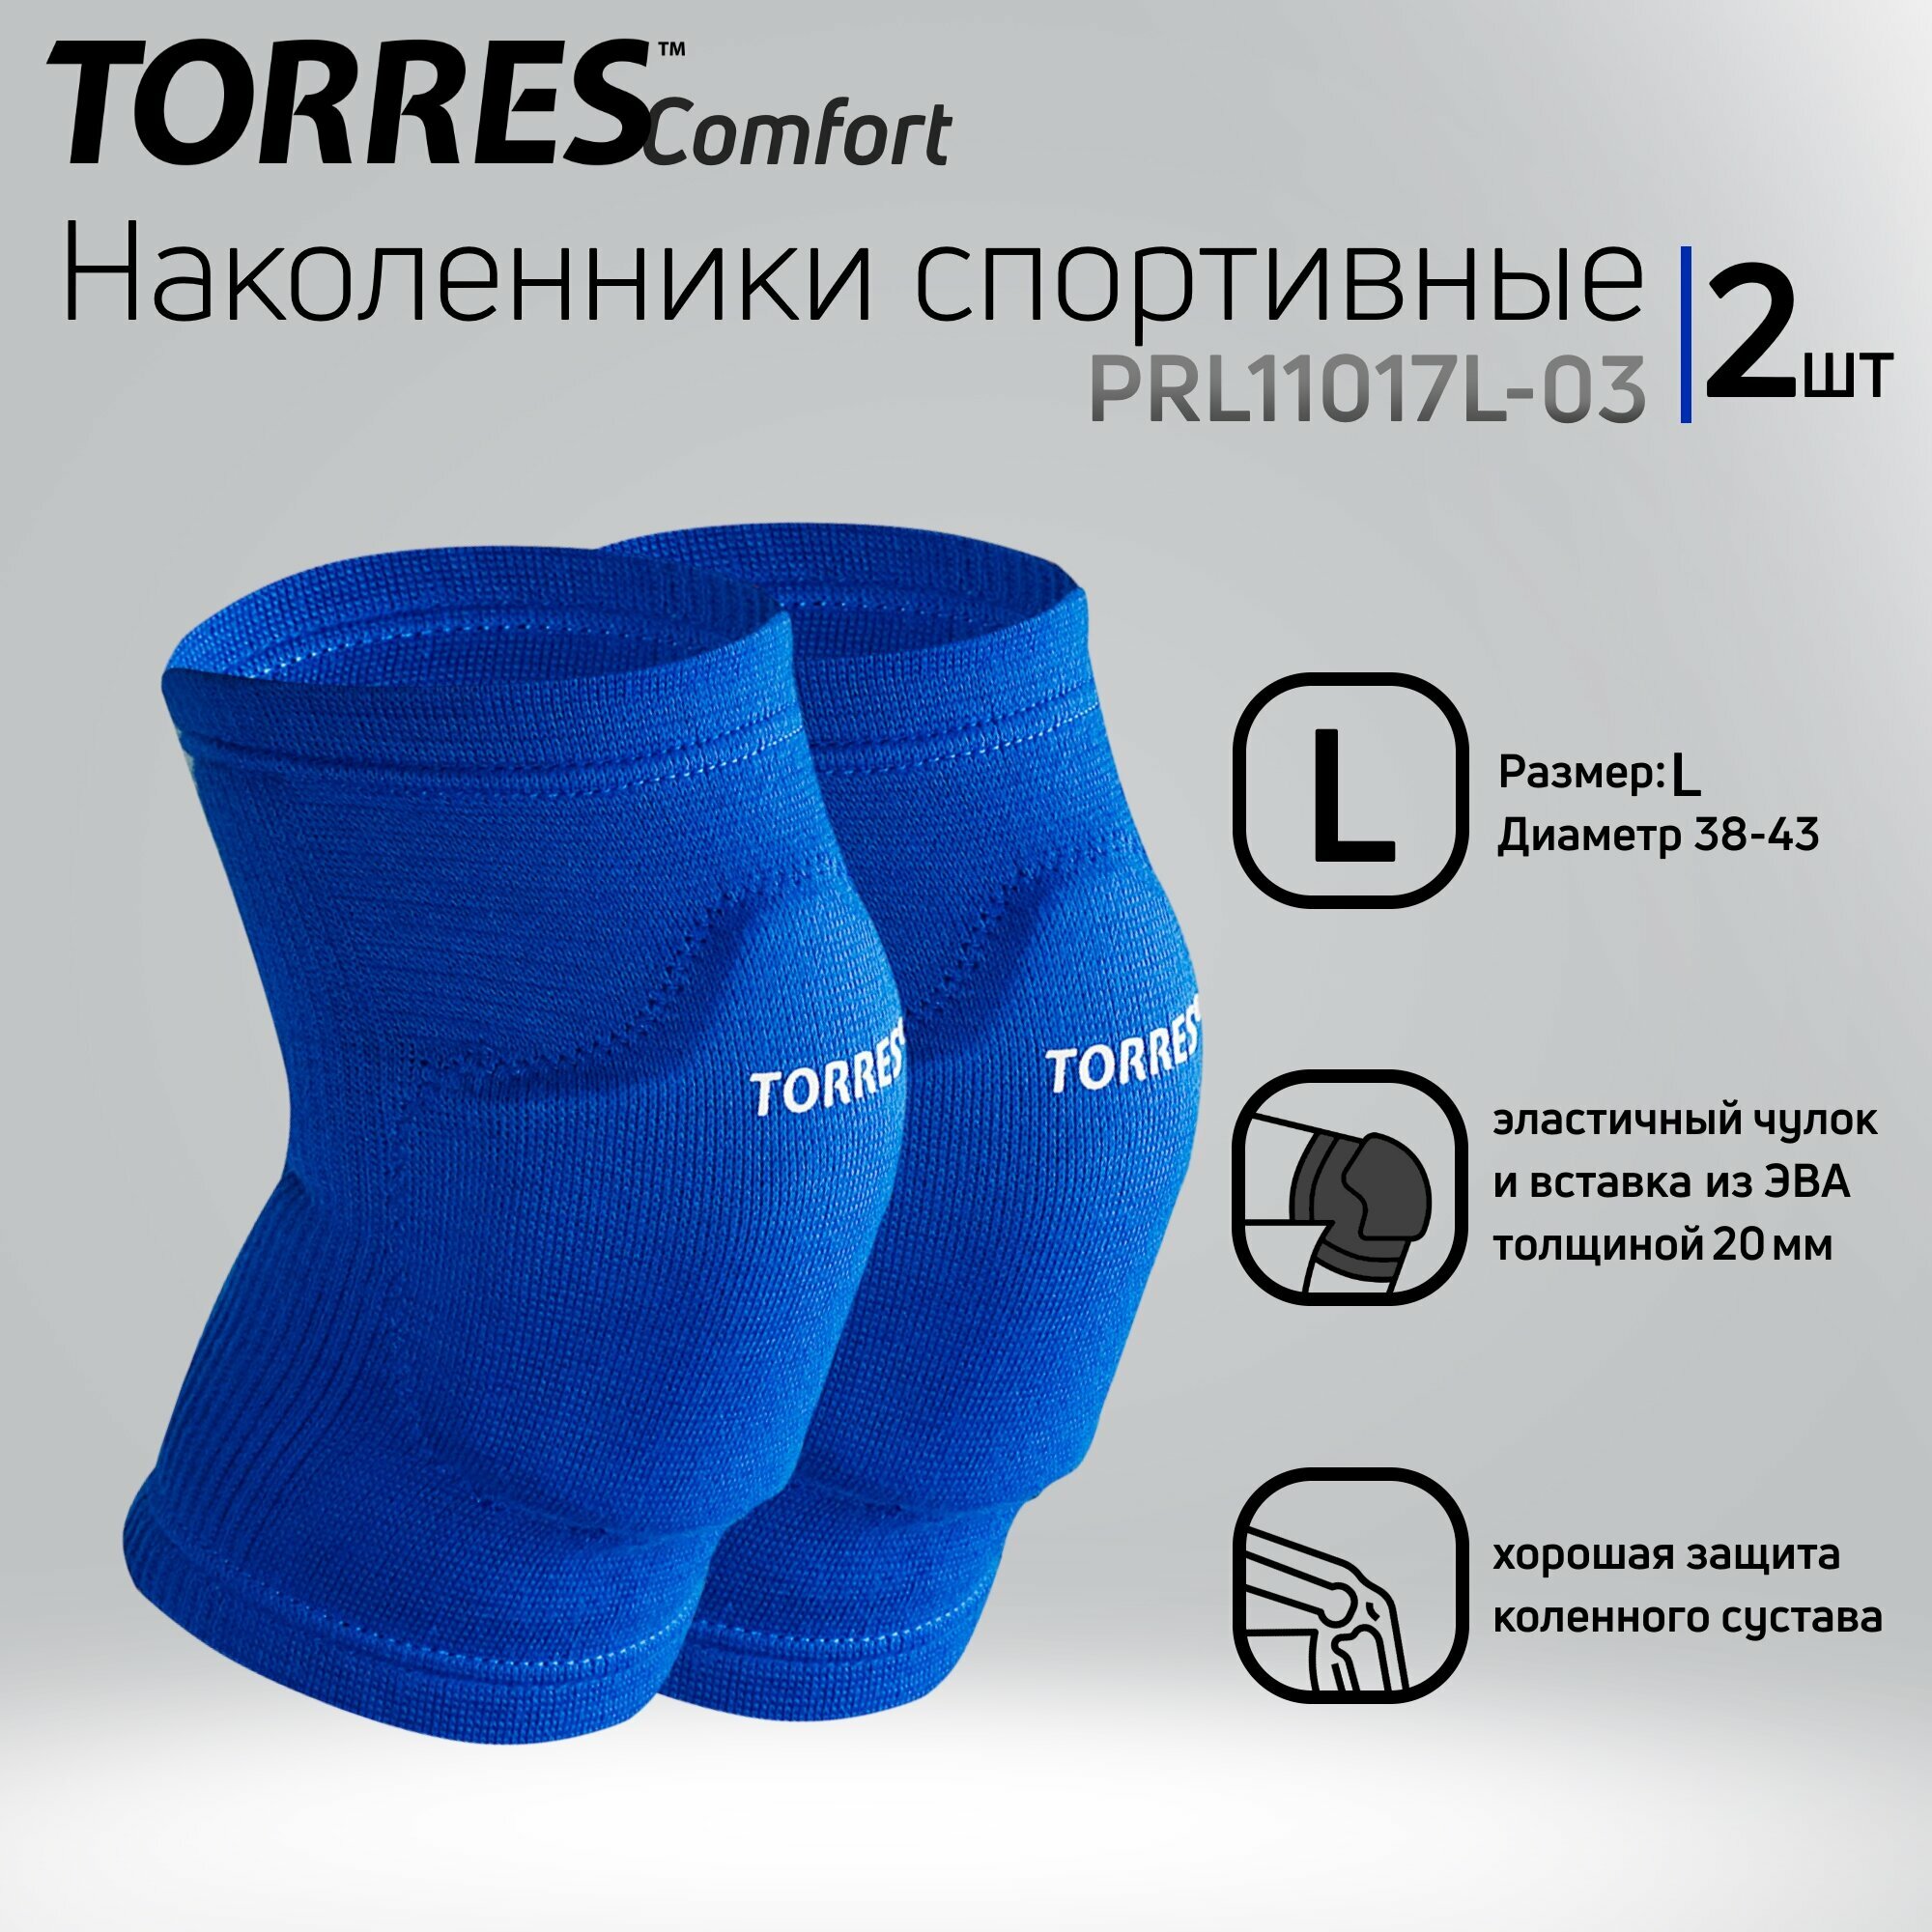 Наколенники спортивные TORRES Comfort PRL11017L-03, размер L, синие